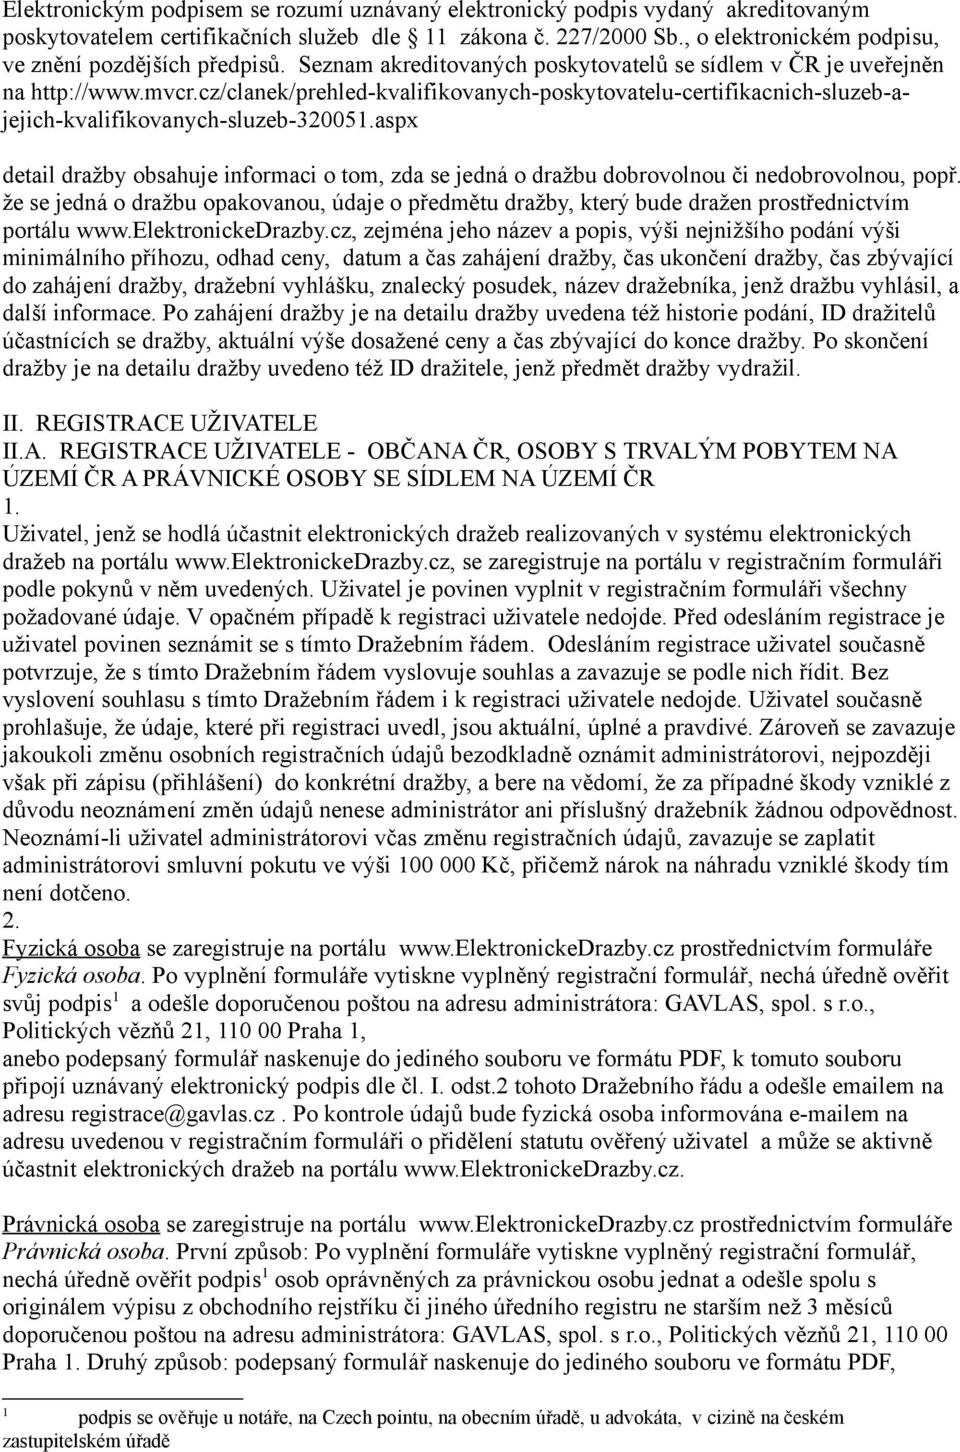 cz/clanek/prehled-kvalifikovanych-poskytovatelu-certifikacnich-sluzeb-ajejich-kvalifikovanych-sluzeb-320051.